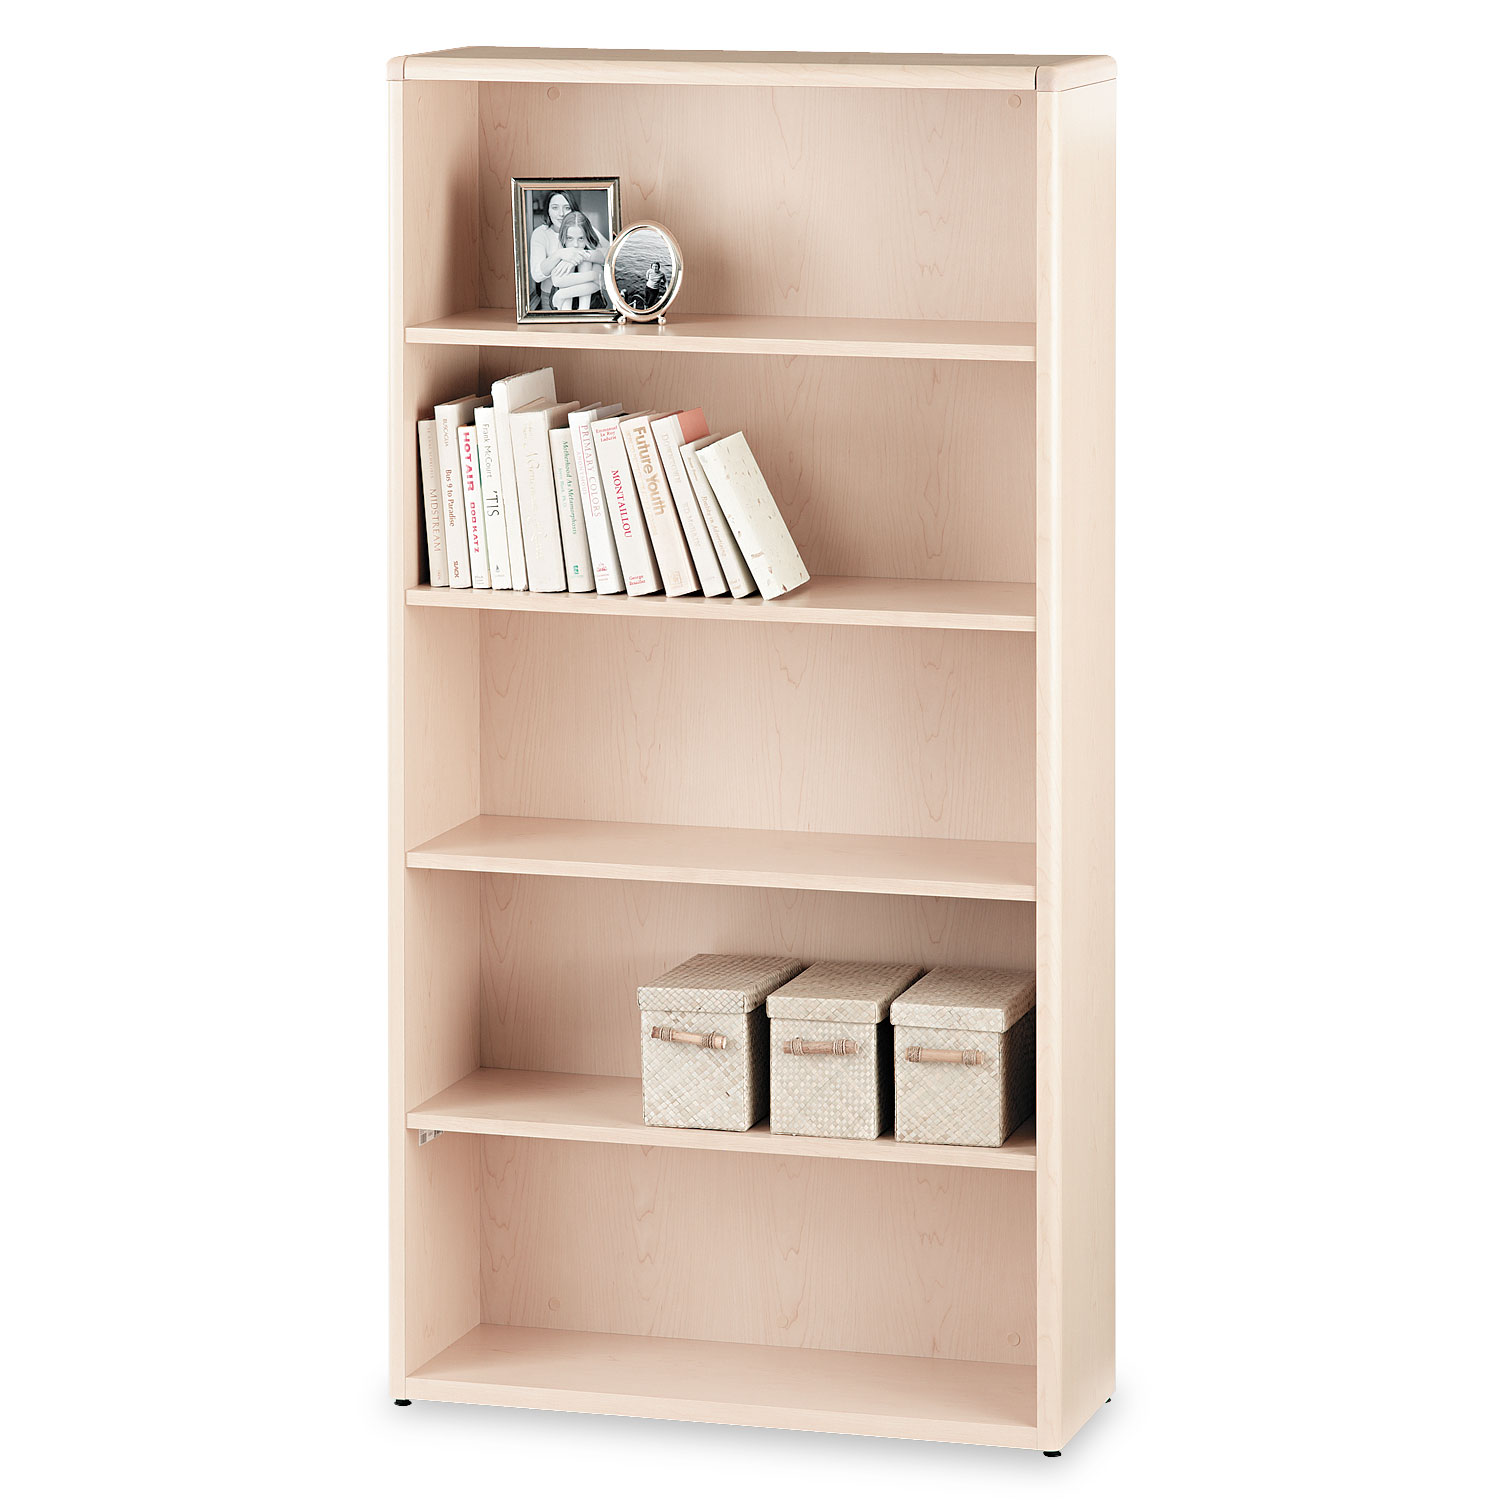  HON H10755.DD 10700 Series Wood Bookcase, Five Shelf, 36w x 13 1/8d x 71h, Natural Maple (HON10755DD) 